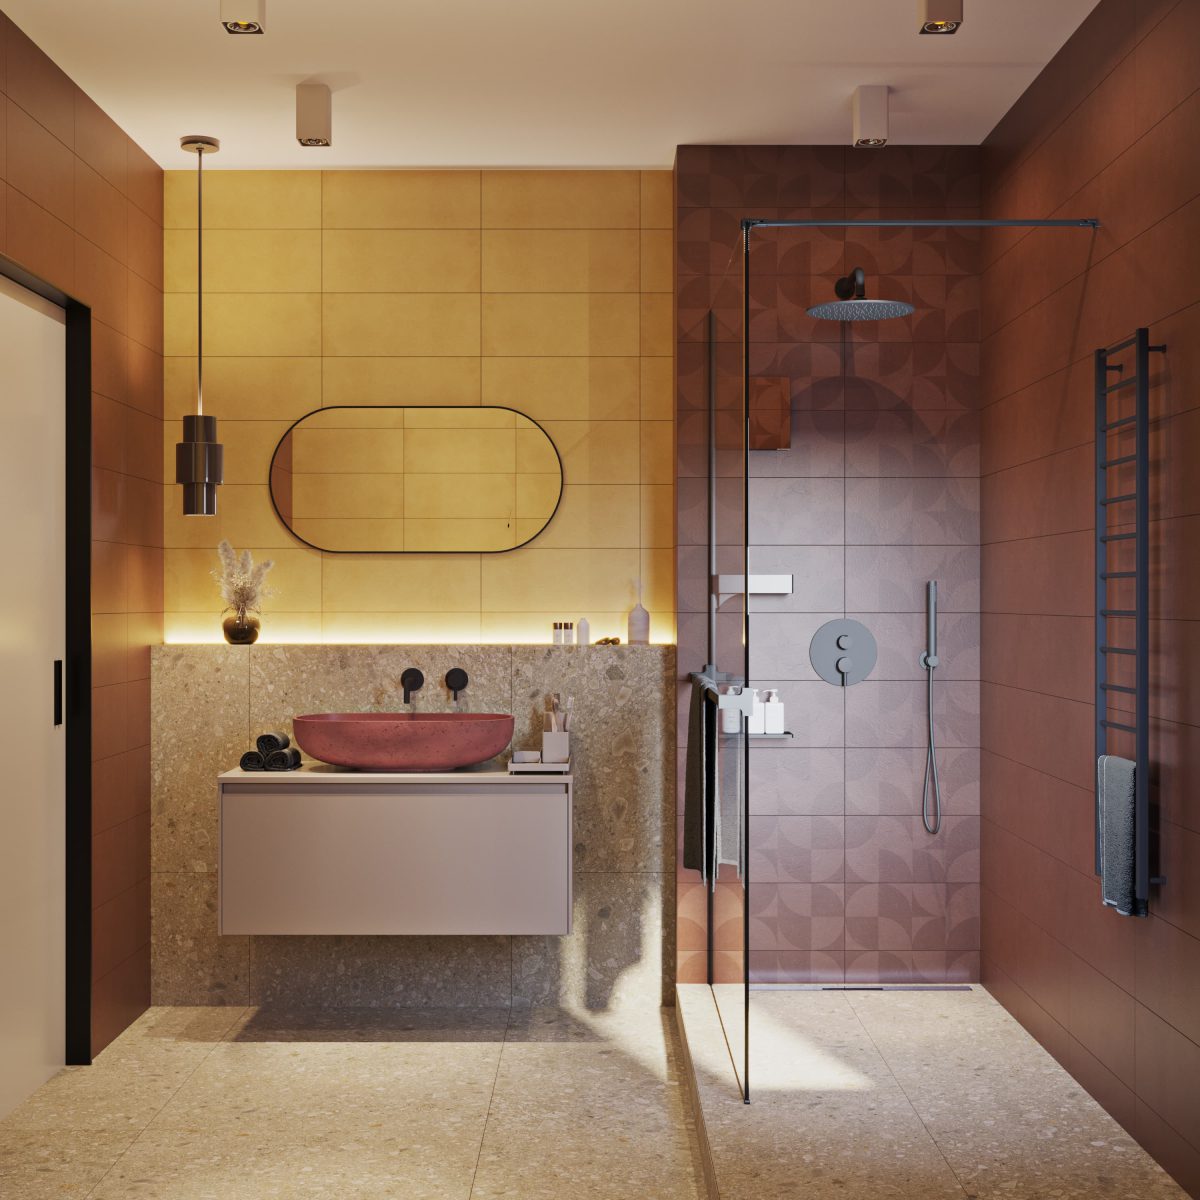 SIKO Barevná koupelna, zemité tóny, žlutá, cihlová, terrazzo, kámen v koupelně, závěsná skříňka, barevné umyvadlo, walk in sprcha